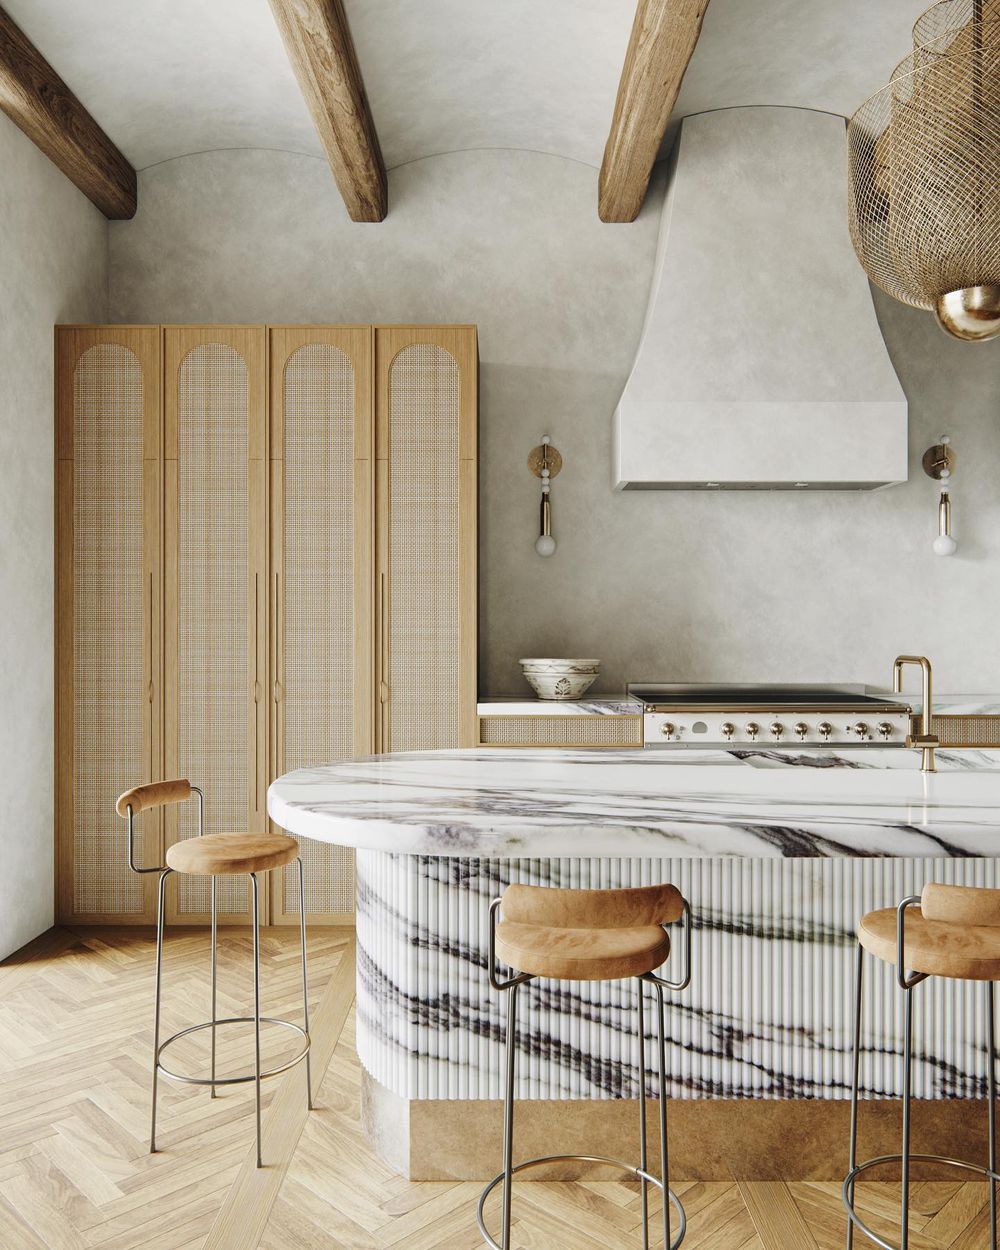 Contemporary kitchen design @noasantos